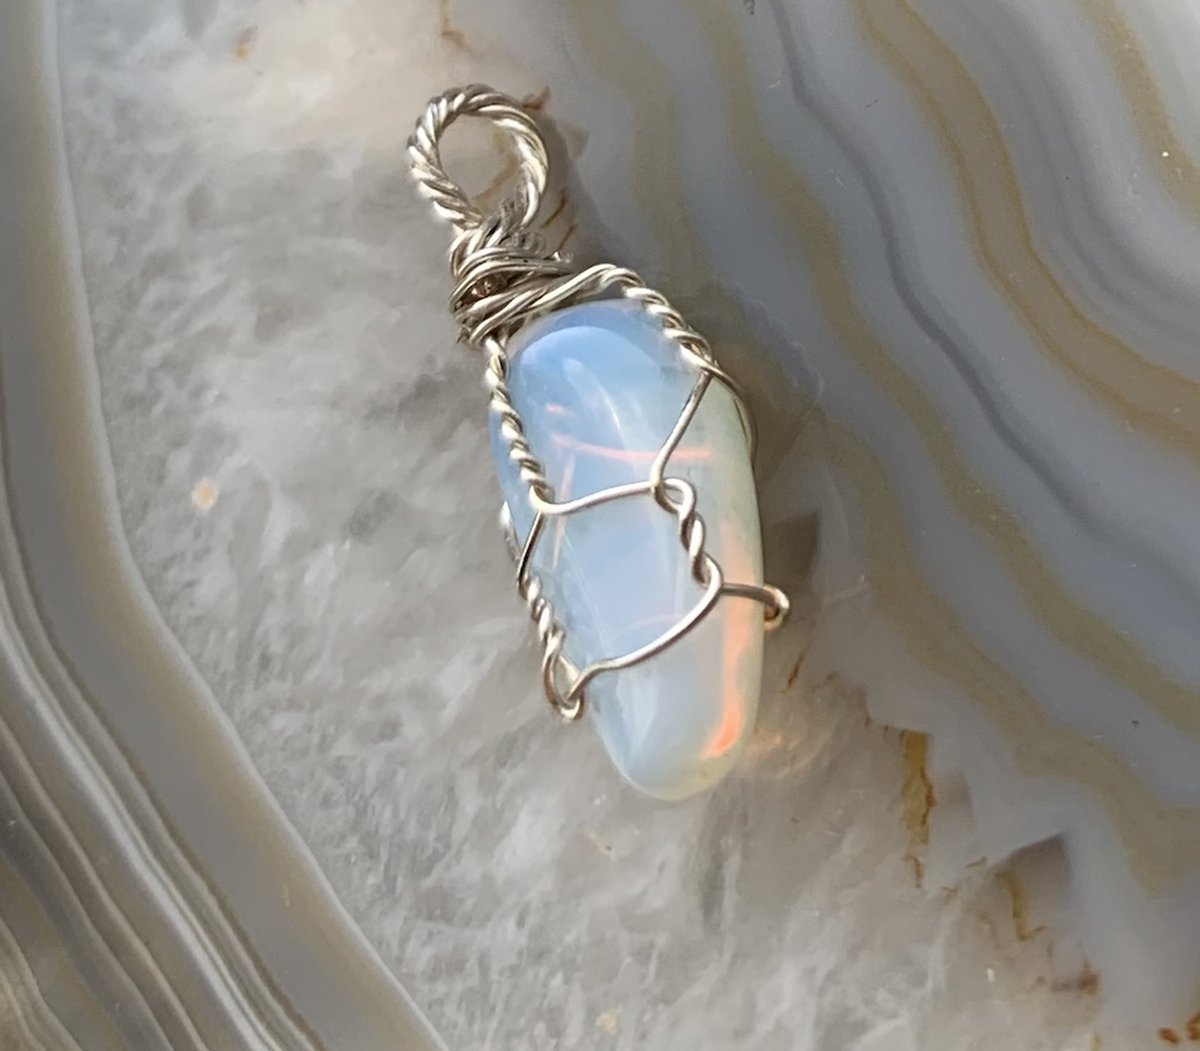 Edelsteen Hanger - Mini - Handgemaakt - Opaliet - Opalite - Zilver - Silver - Crystal necklace